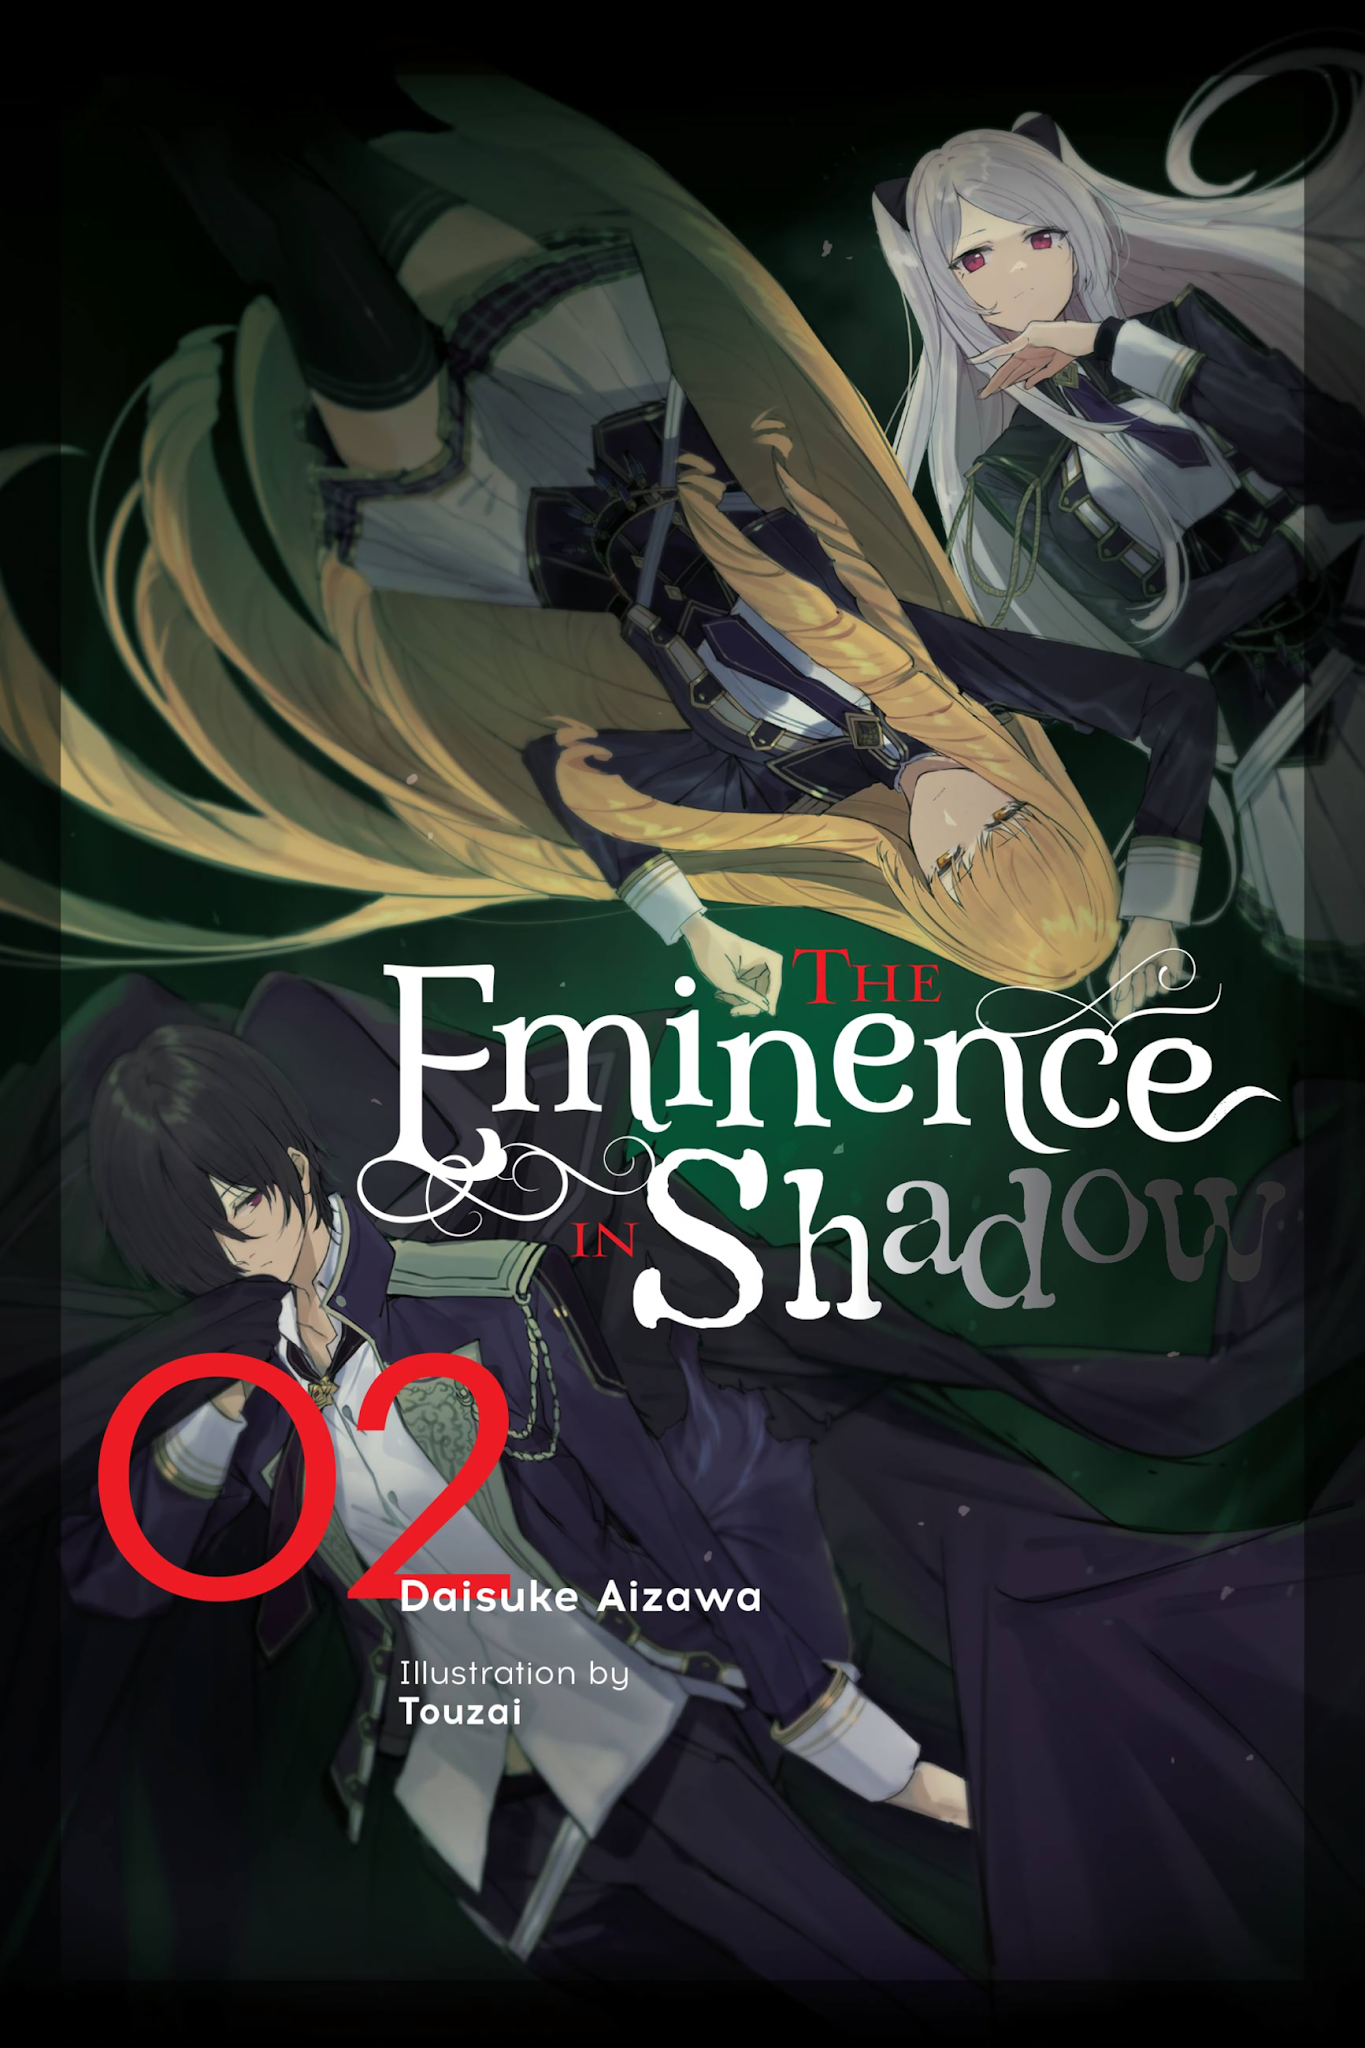 The Eminence in Shadow (Light Novel) - Volume 2 | Daisuke Aizawa